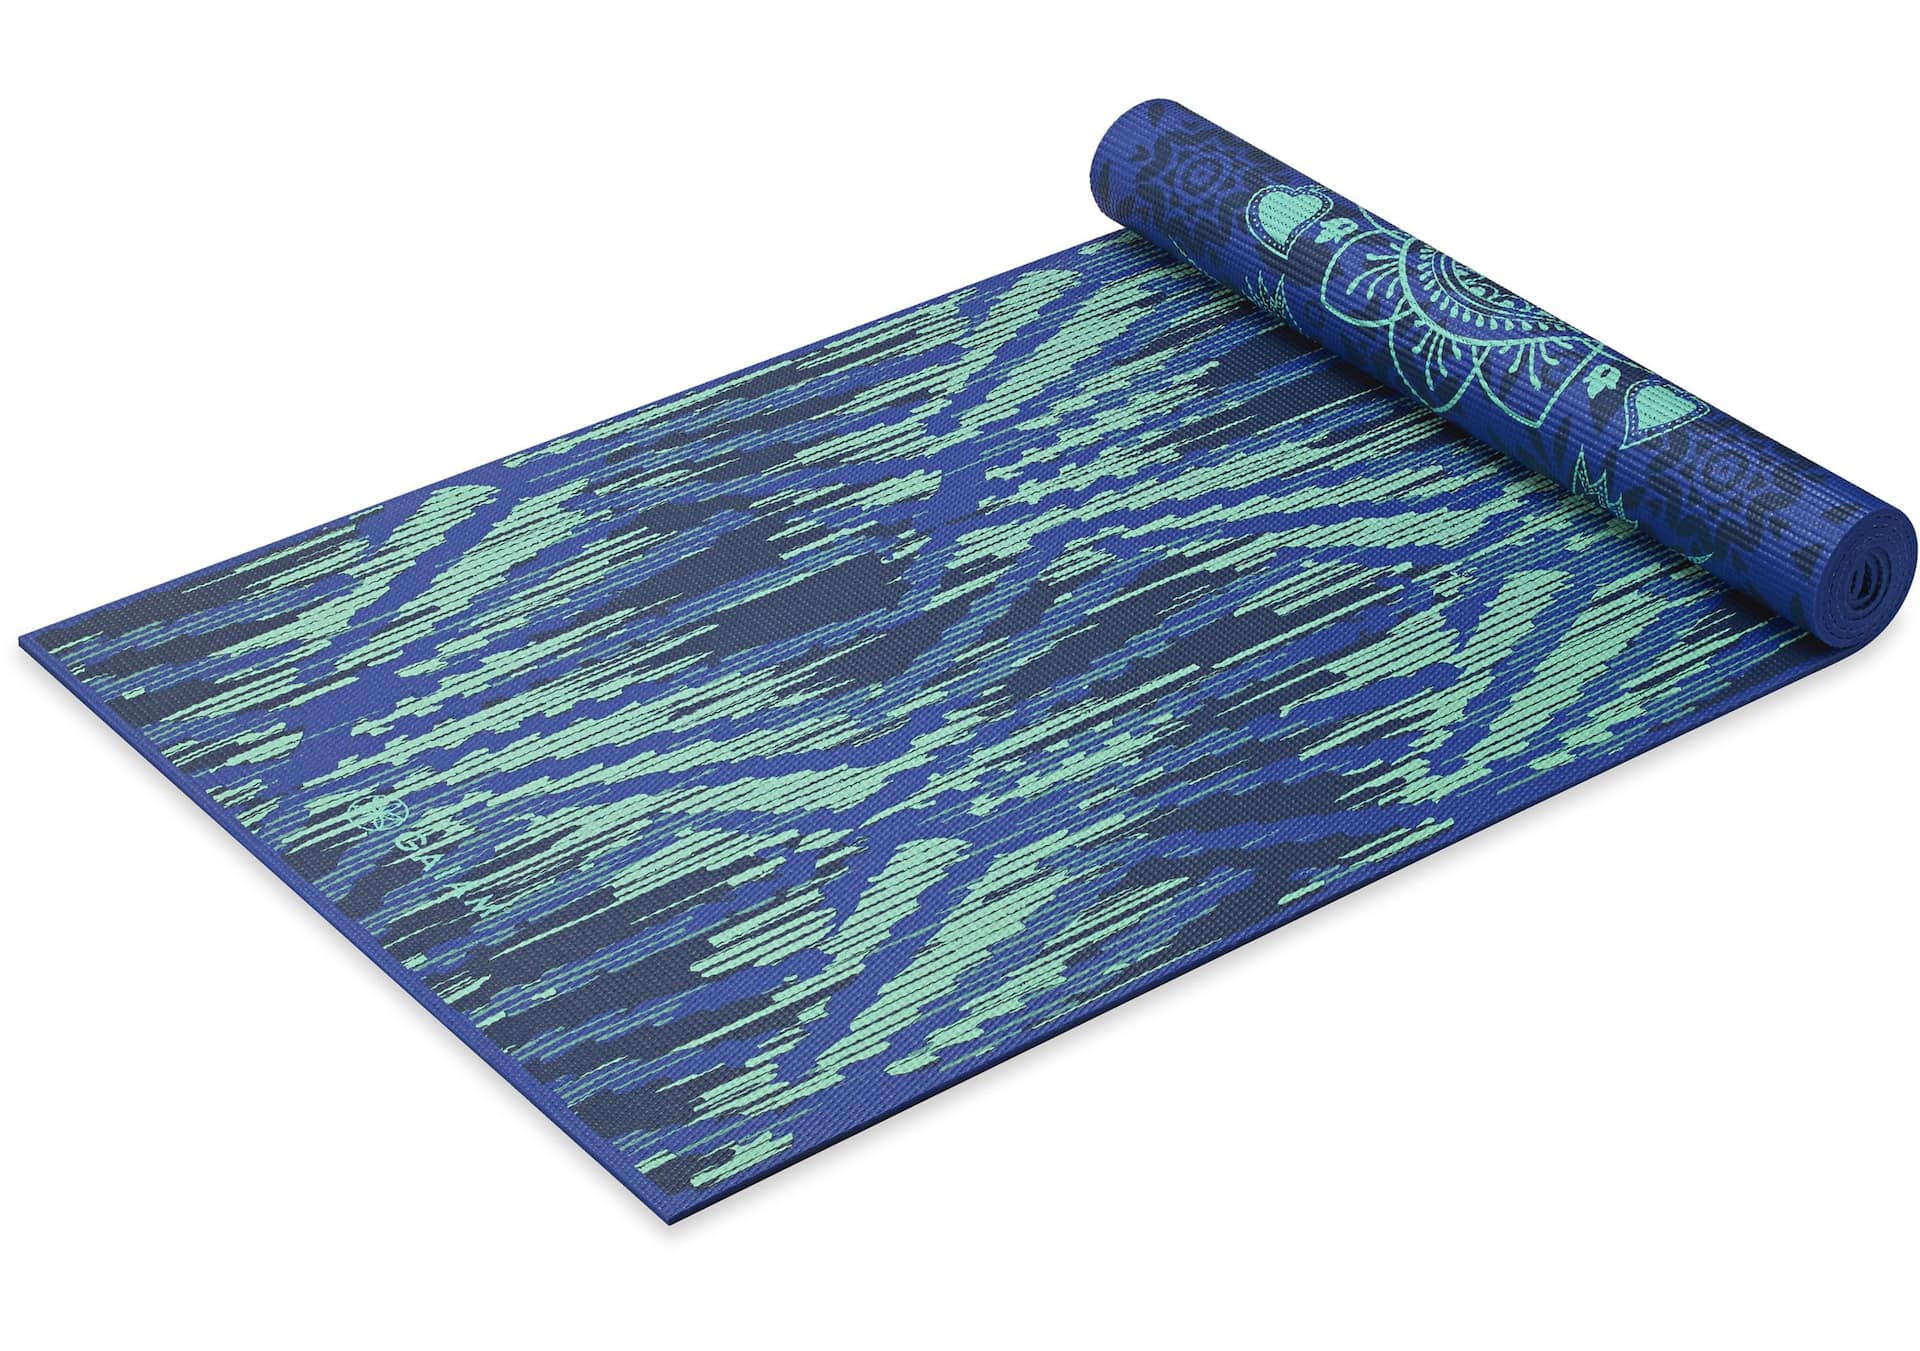 Gaiam Reversible Printed Yoga Mat, 6mm, Latex-Free, Non-Slip